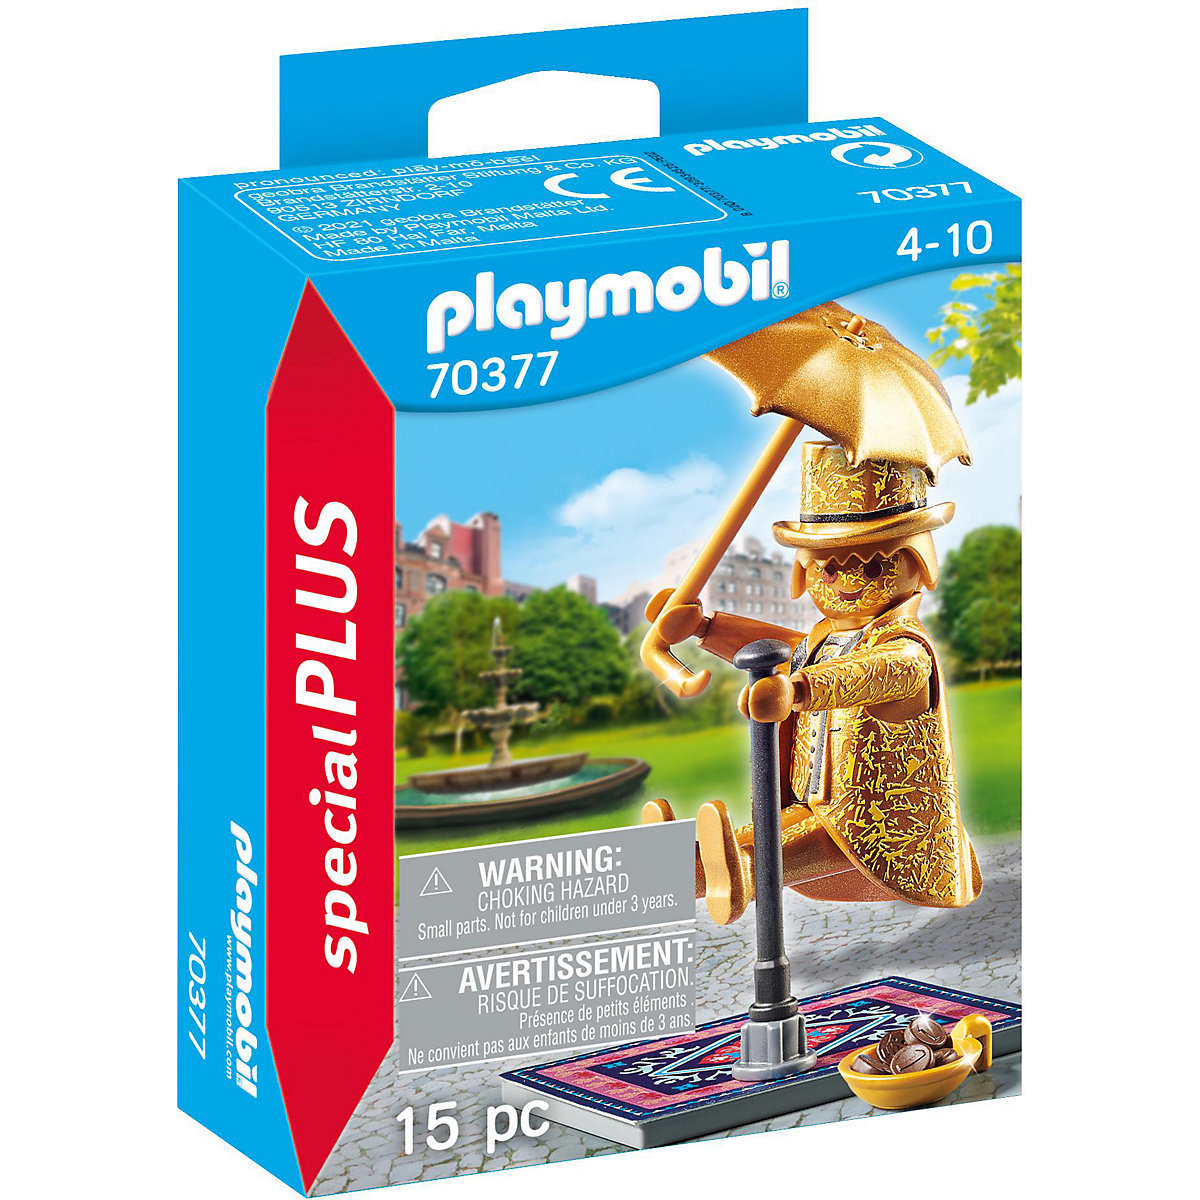  быстрое решение! новый товар PLAYMOBIL 70377 специальный плюс Street художник Play Mobil 